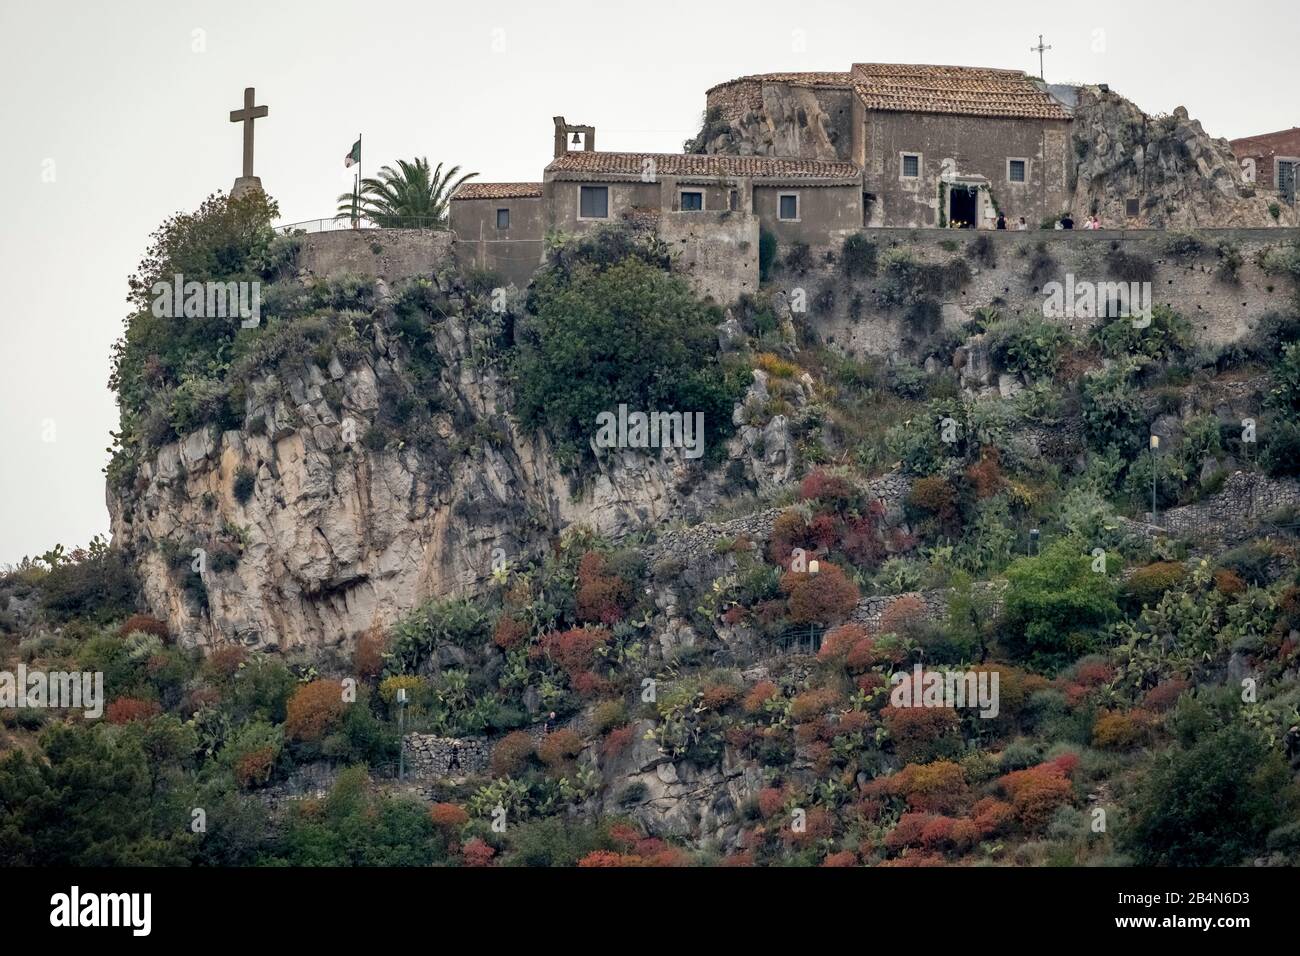 La petite église de la Madonna della Rocca est située sur une pente raide avec vue sur Taormine, Taormine, Italie du sud, Europe, Sicile, Italie Banque D'Images